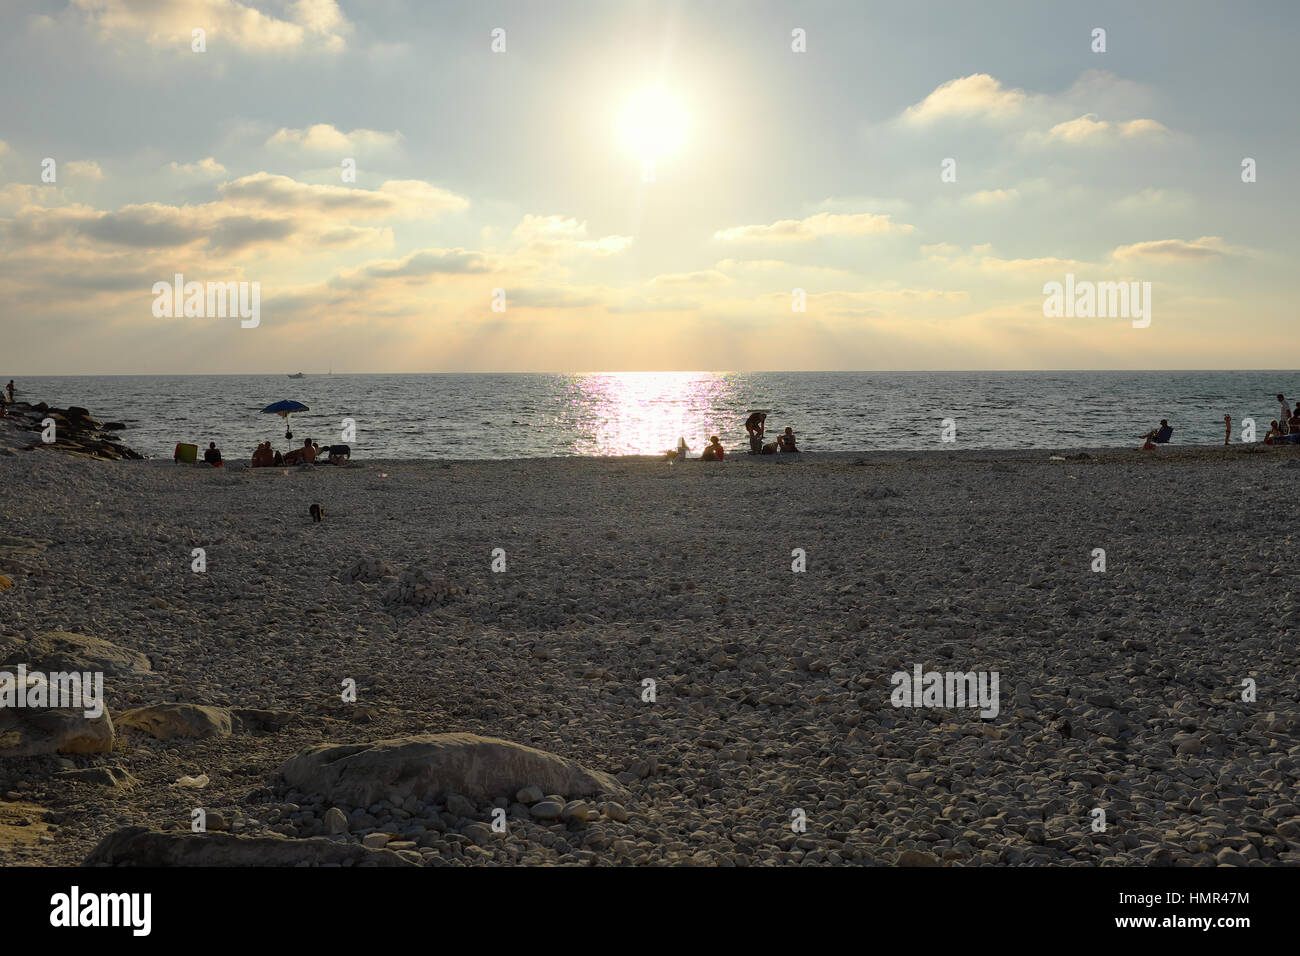 Attendre que le soleil à l'ensemble - Les personnes en attente de coucher du soleil à l'heure d'or dans une plage de galets à Marina di Pisa, Toscane, Italie, Europe Banque D'Images